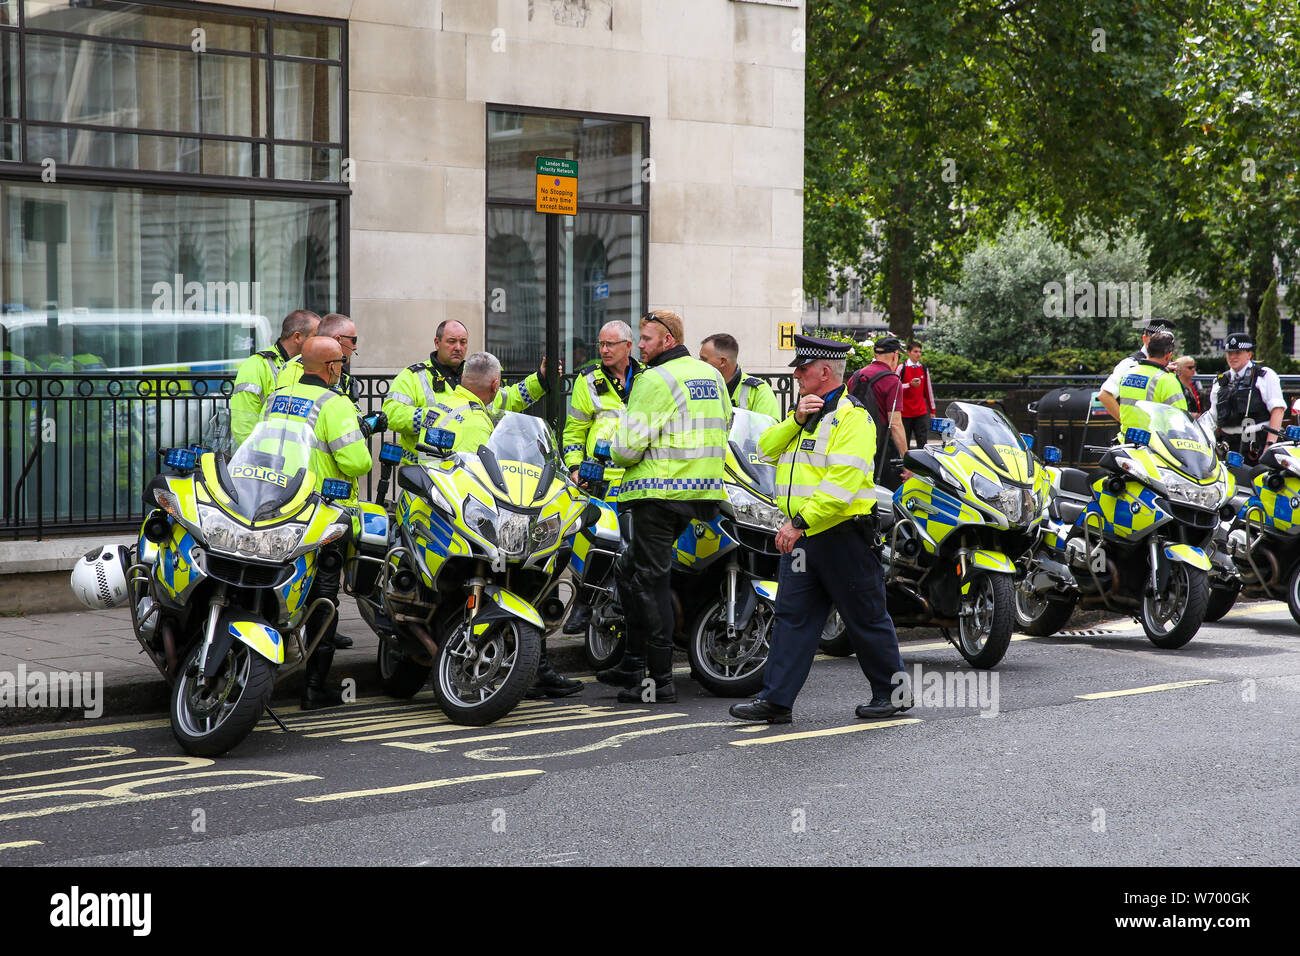 Les officiers de police sur les vélos sont vus au cours de la manifestation.un rassemblement à l'appui de l'extrême droite britannique Stephen Yaxley-Lennon, également connu sous le nom de Tommy Robinson, au centre de Londres. Tommy Robinson a été emprisonné le 11 juillet 2019 à Old Bailey pour outrage au tribunal. Banque D'Images